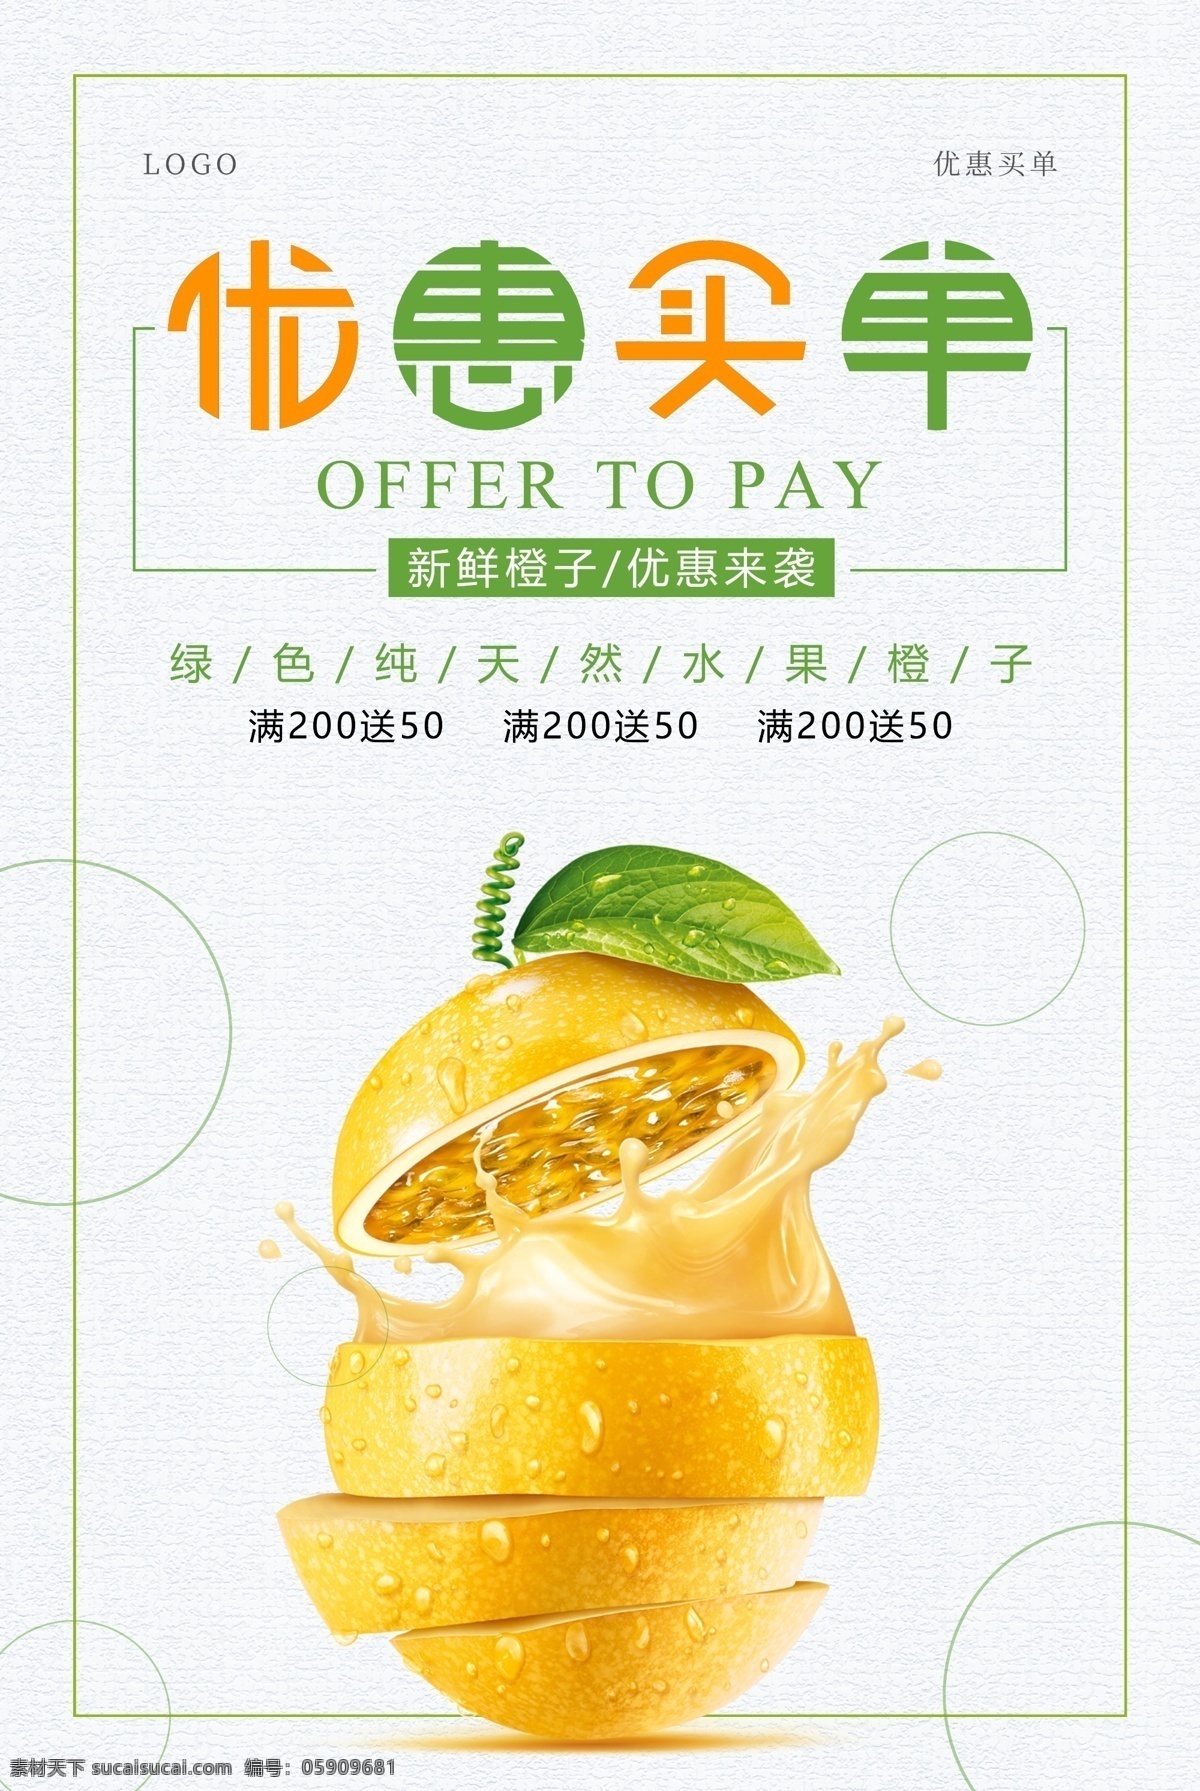 优惠 买单 柠檬汁 饮品 50元 购物 优惠券 优惠买单 最高立减 领券 海报 手机支付